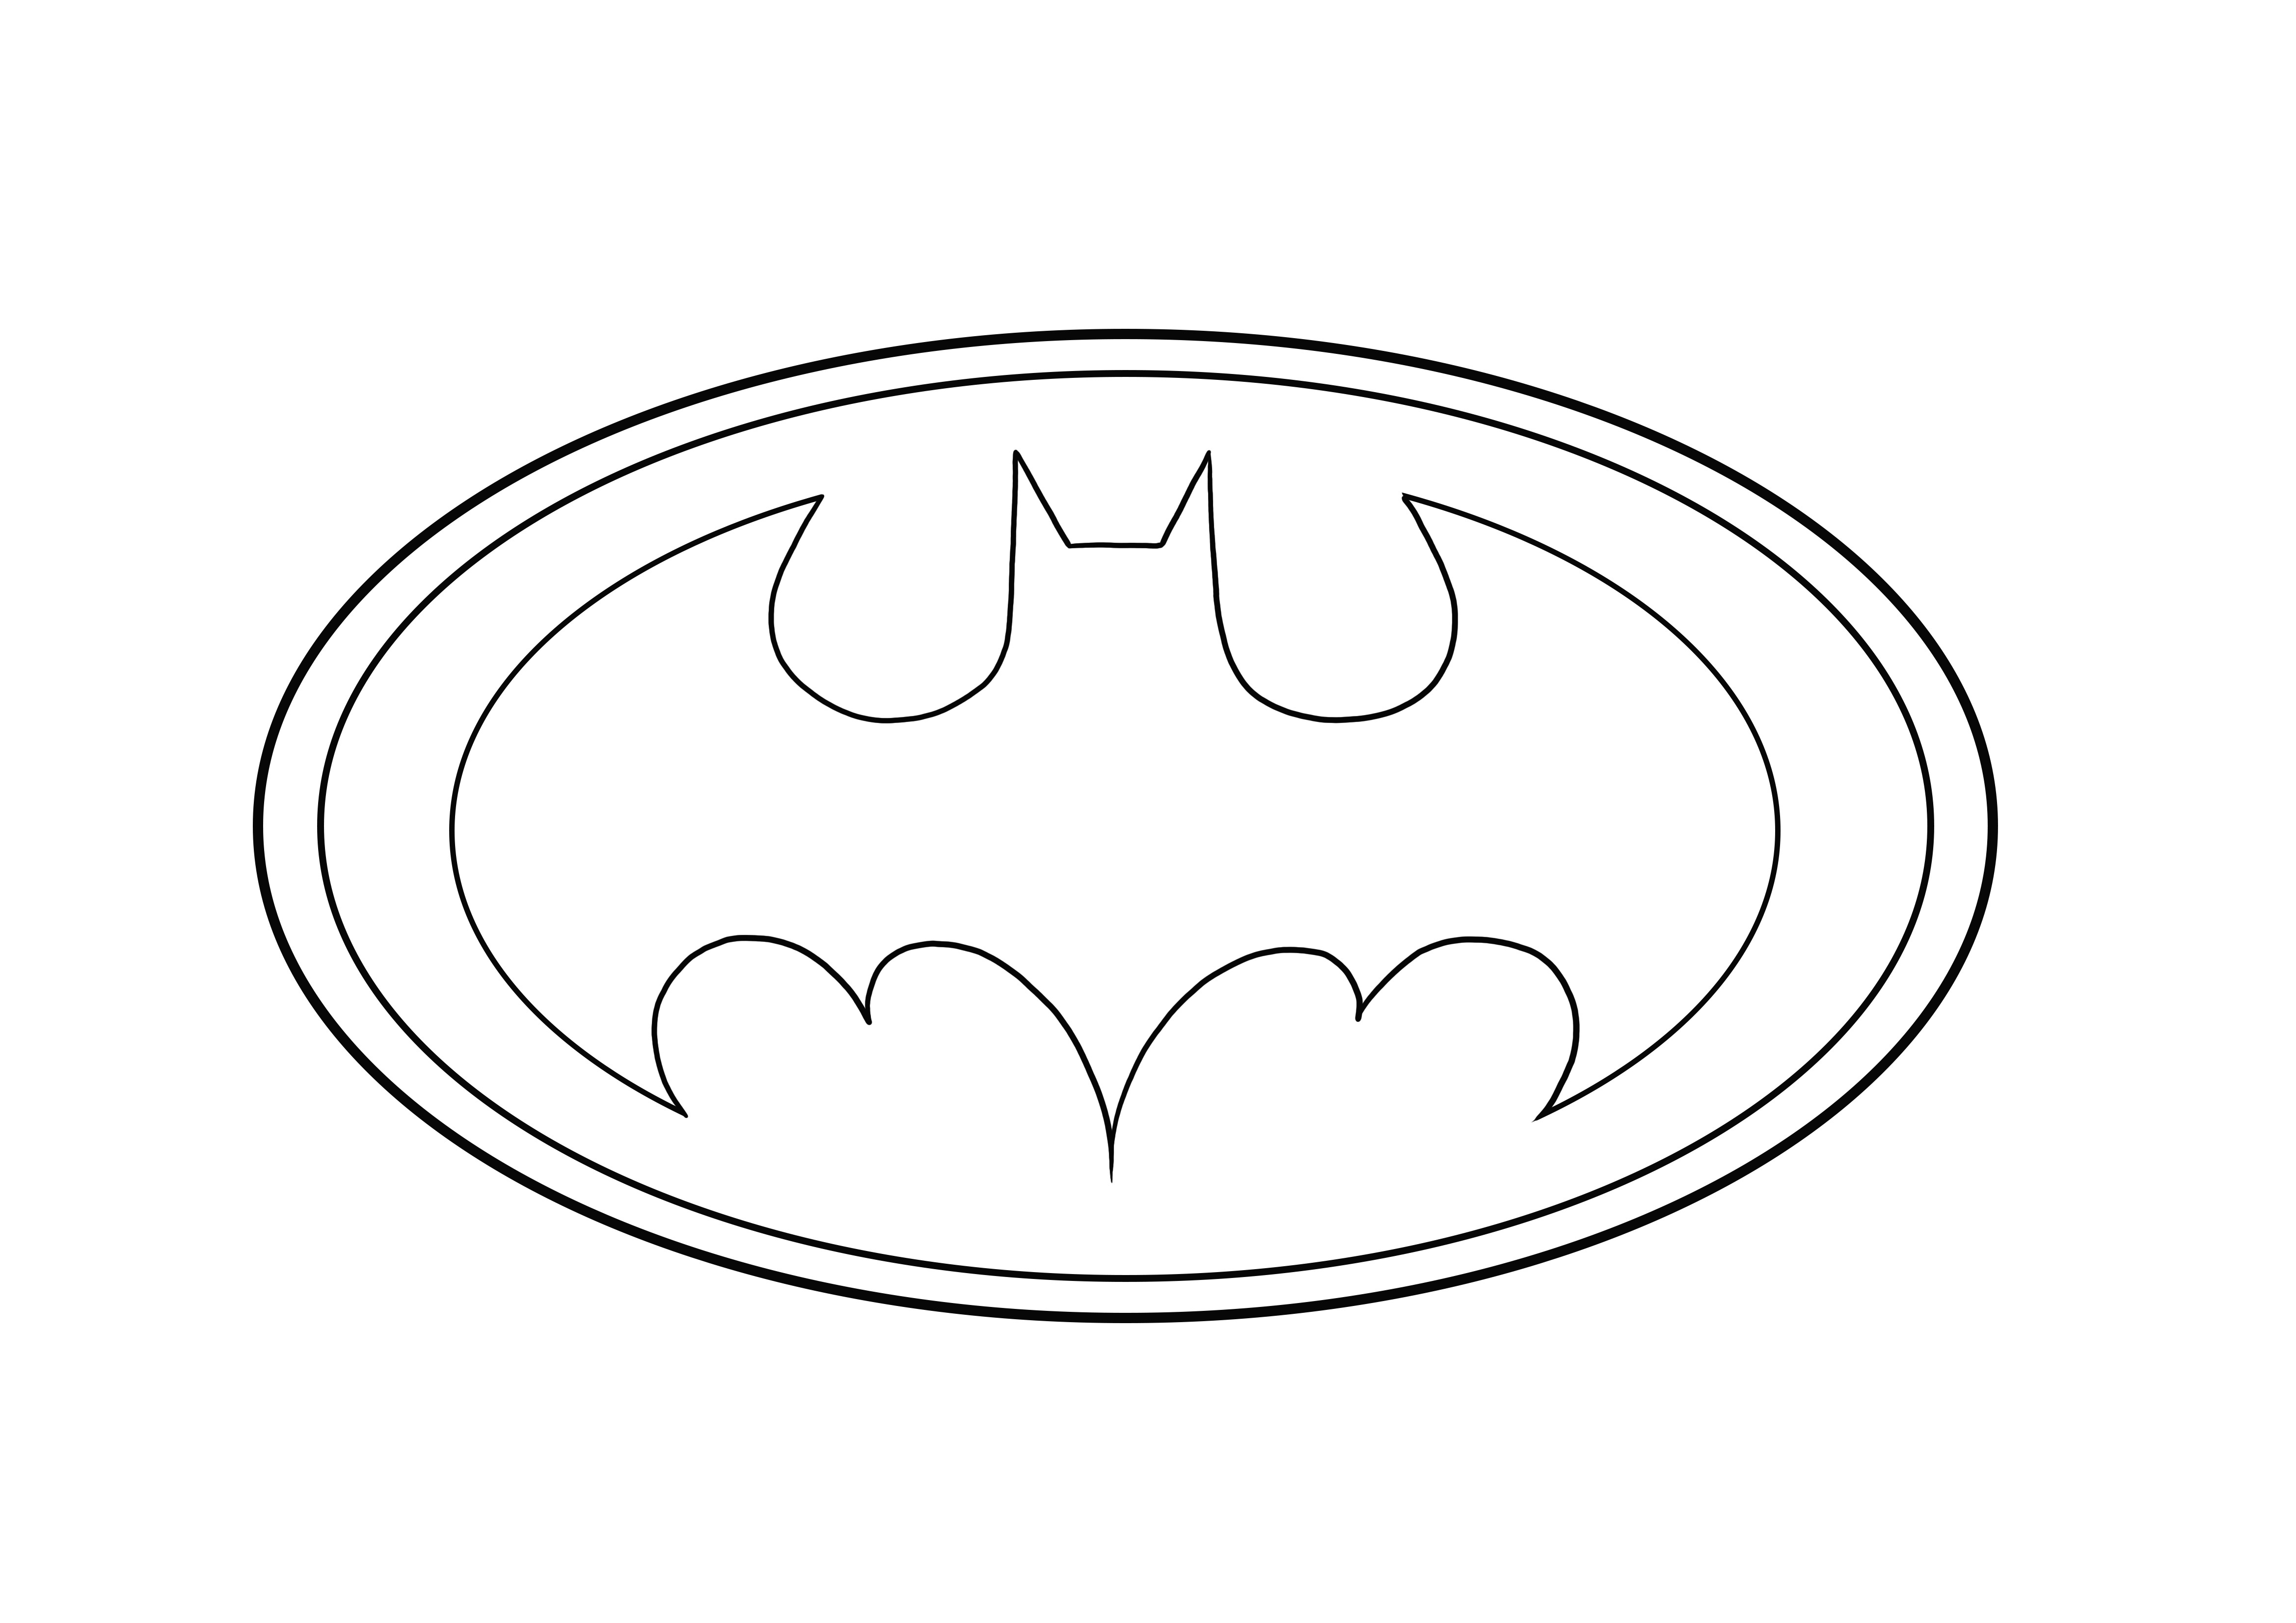 El Logo de Batman está listo para ser descargado y coloreado gratis